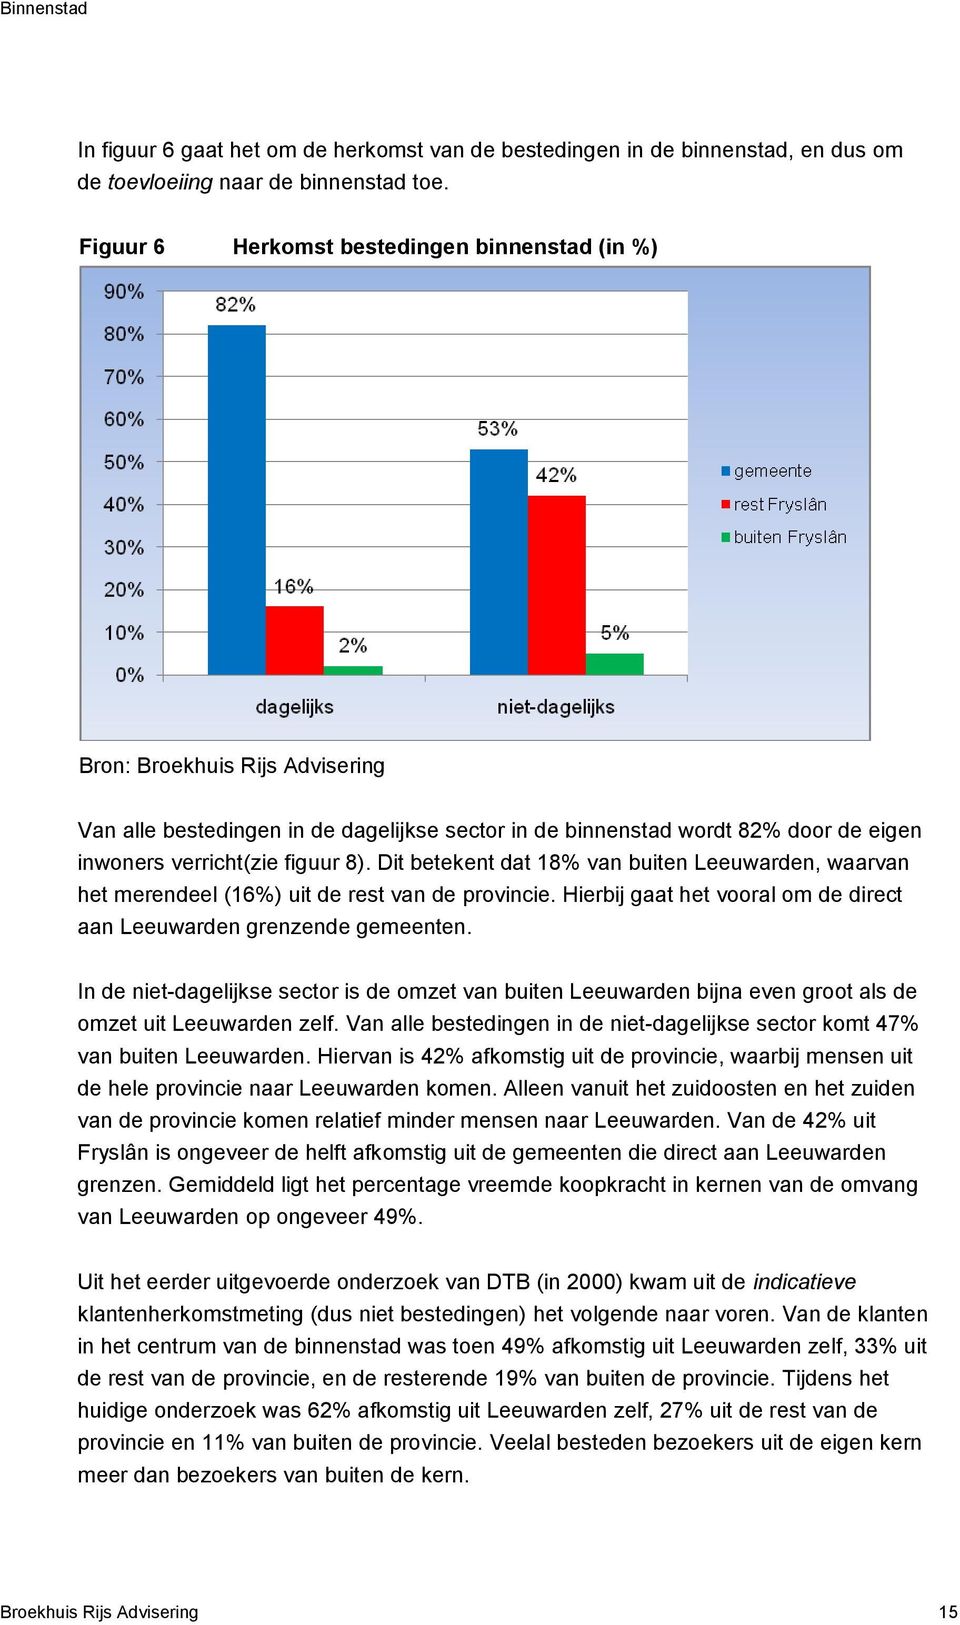 Dit betekent dat 18% van buiten Leeuwarden, waarvan het merendeel (16%) uit de rest van de provincie. Hierbij gaat het vooral om de direct aan Leeuwarden grenzende gemeenten.